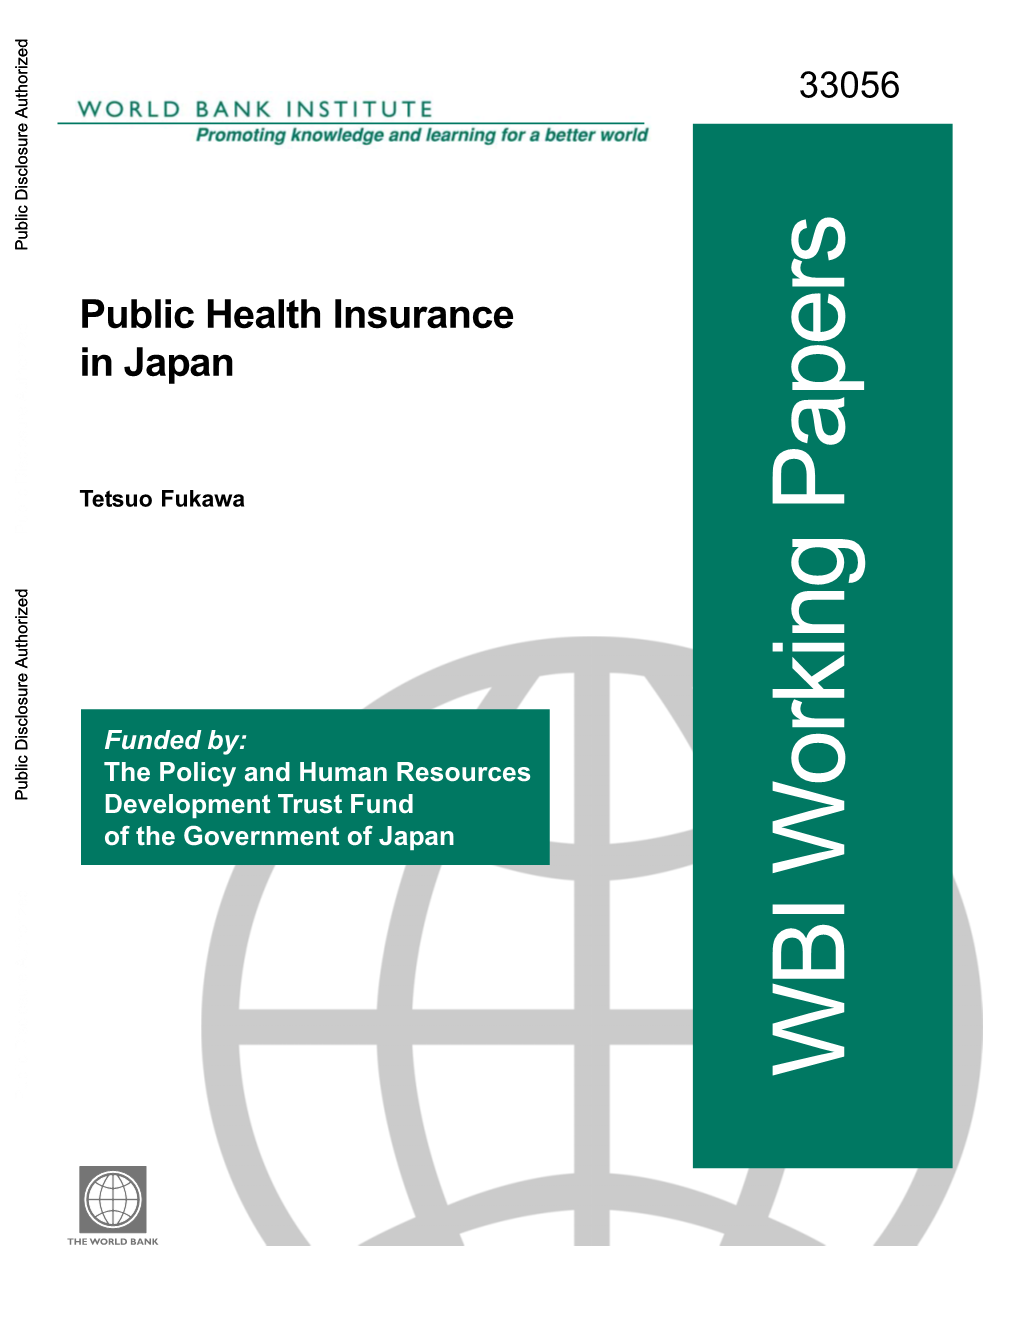 Public Health Insurance in Japan